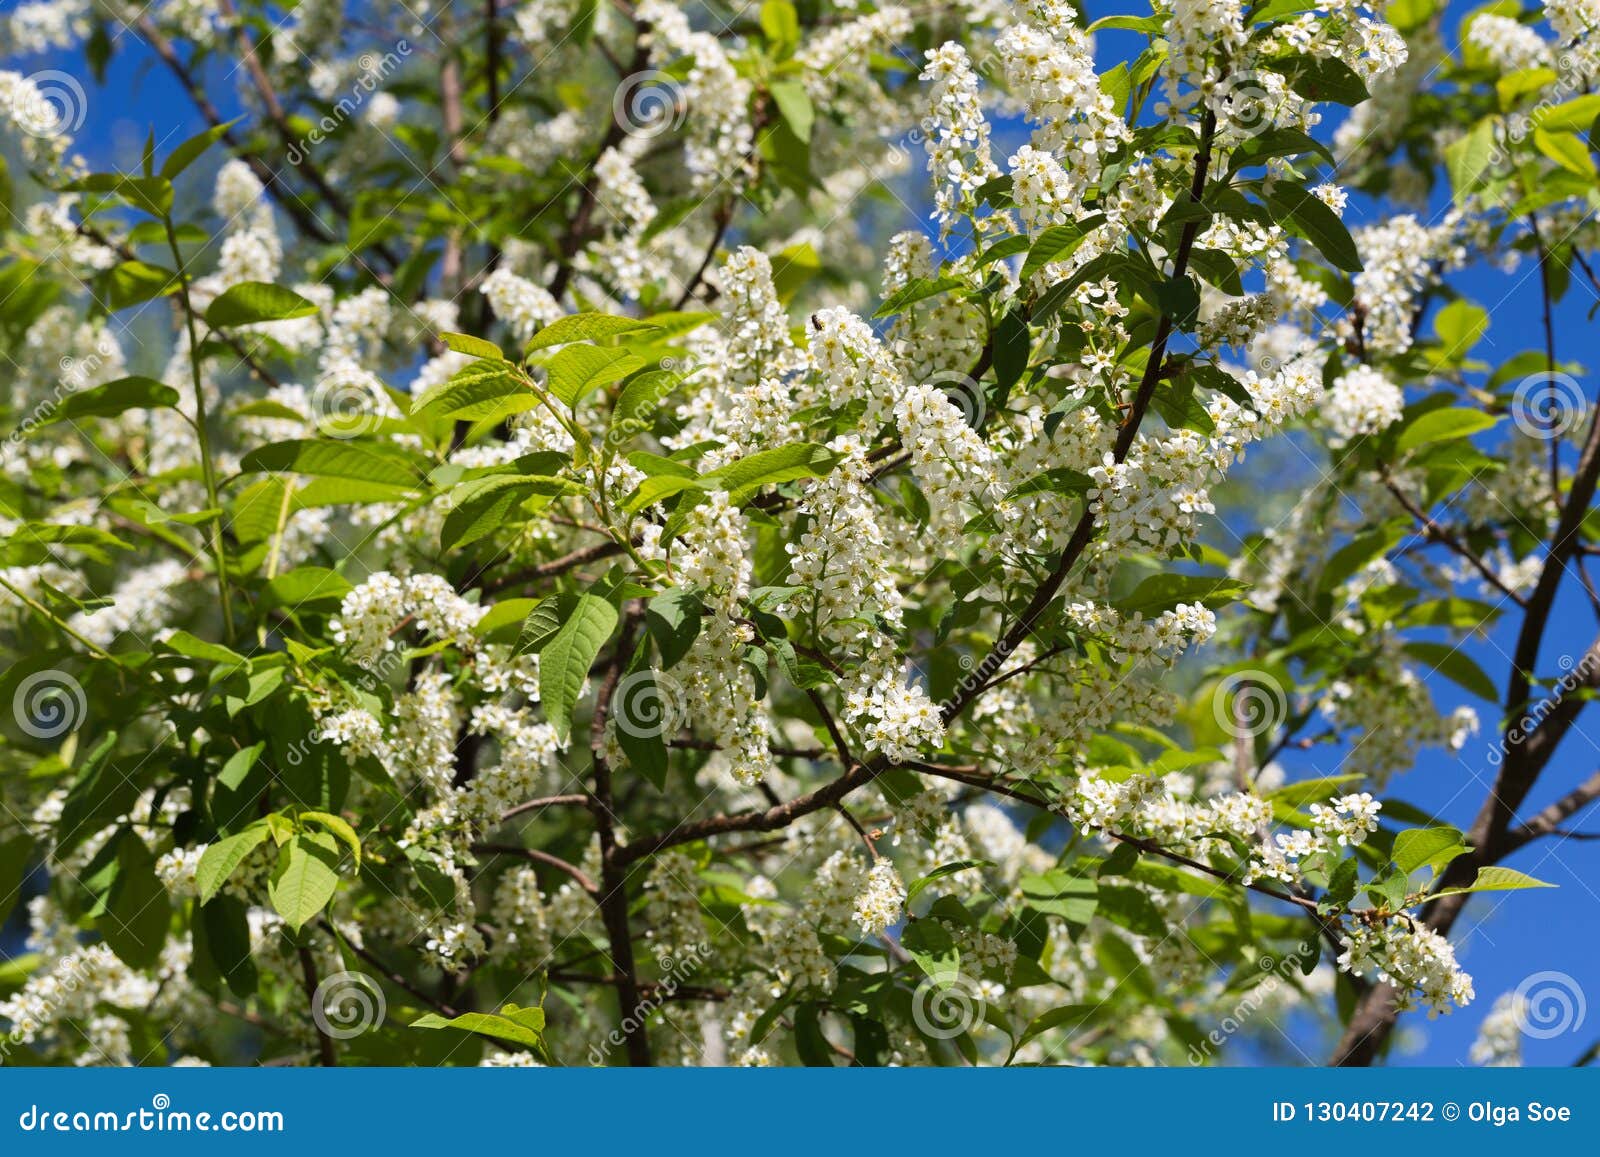 BLossoming Bird Cherry Tree Prunus Padus Stock Photo - Image of green ...